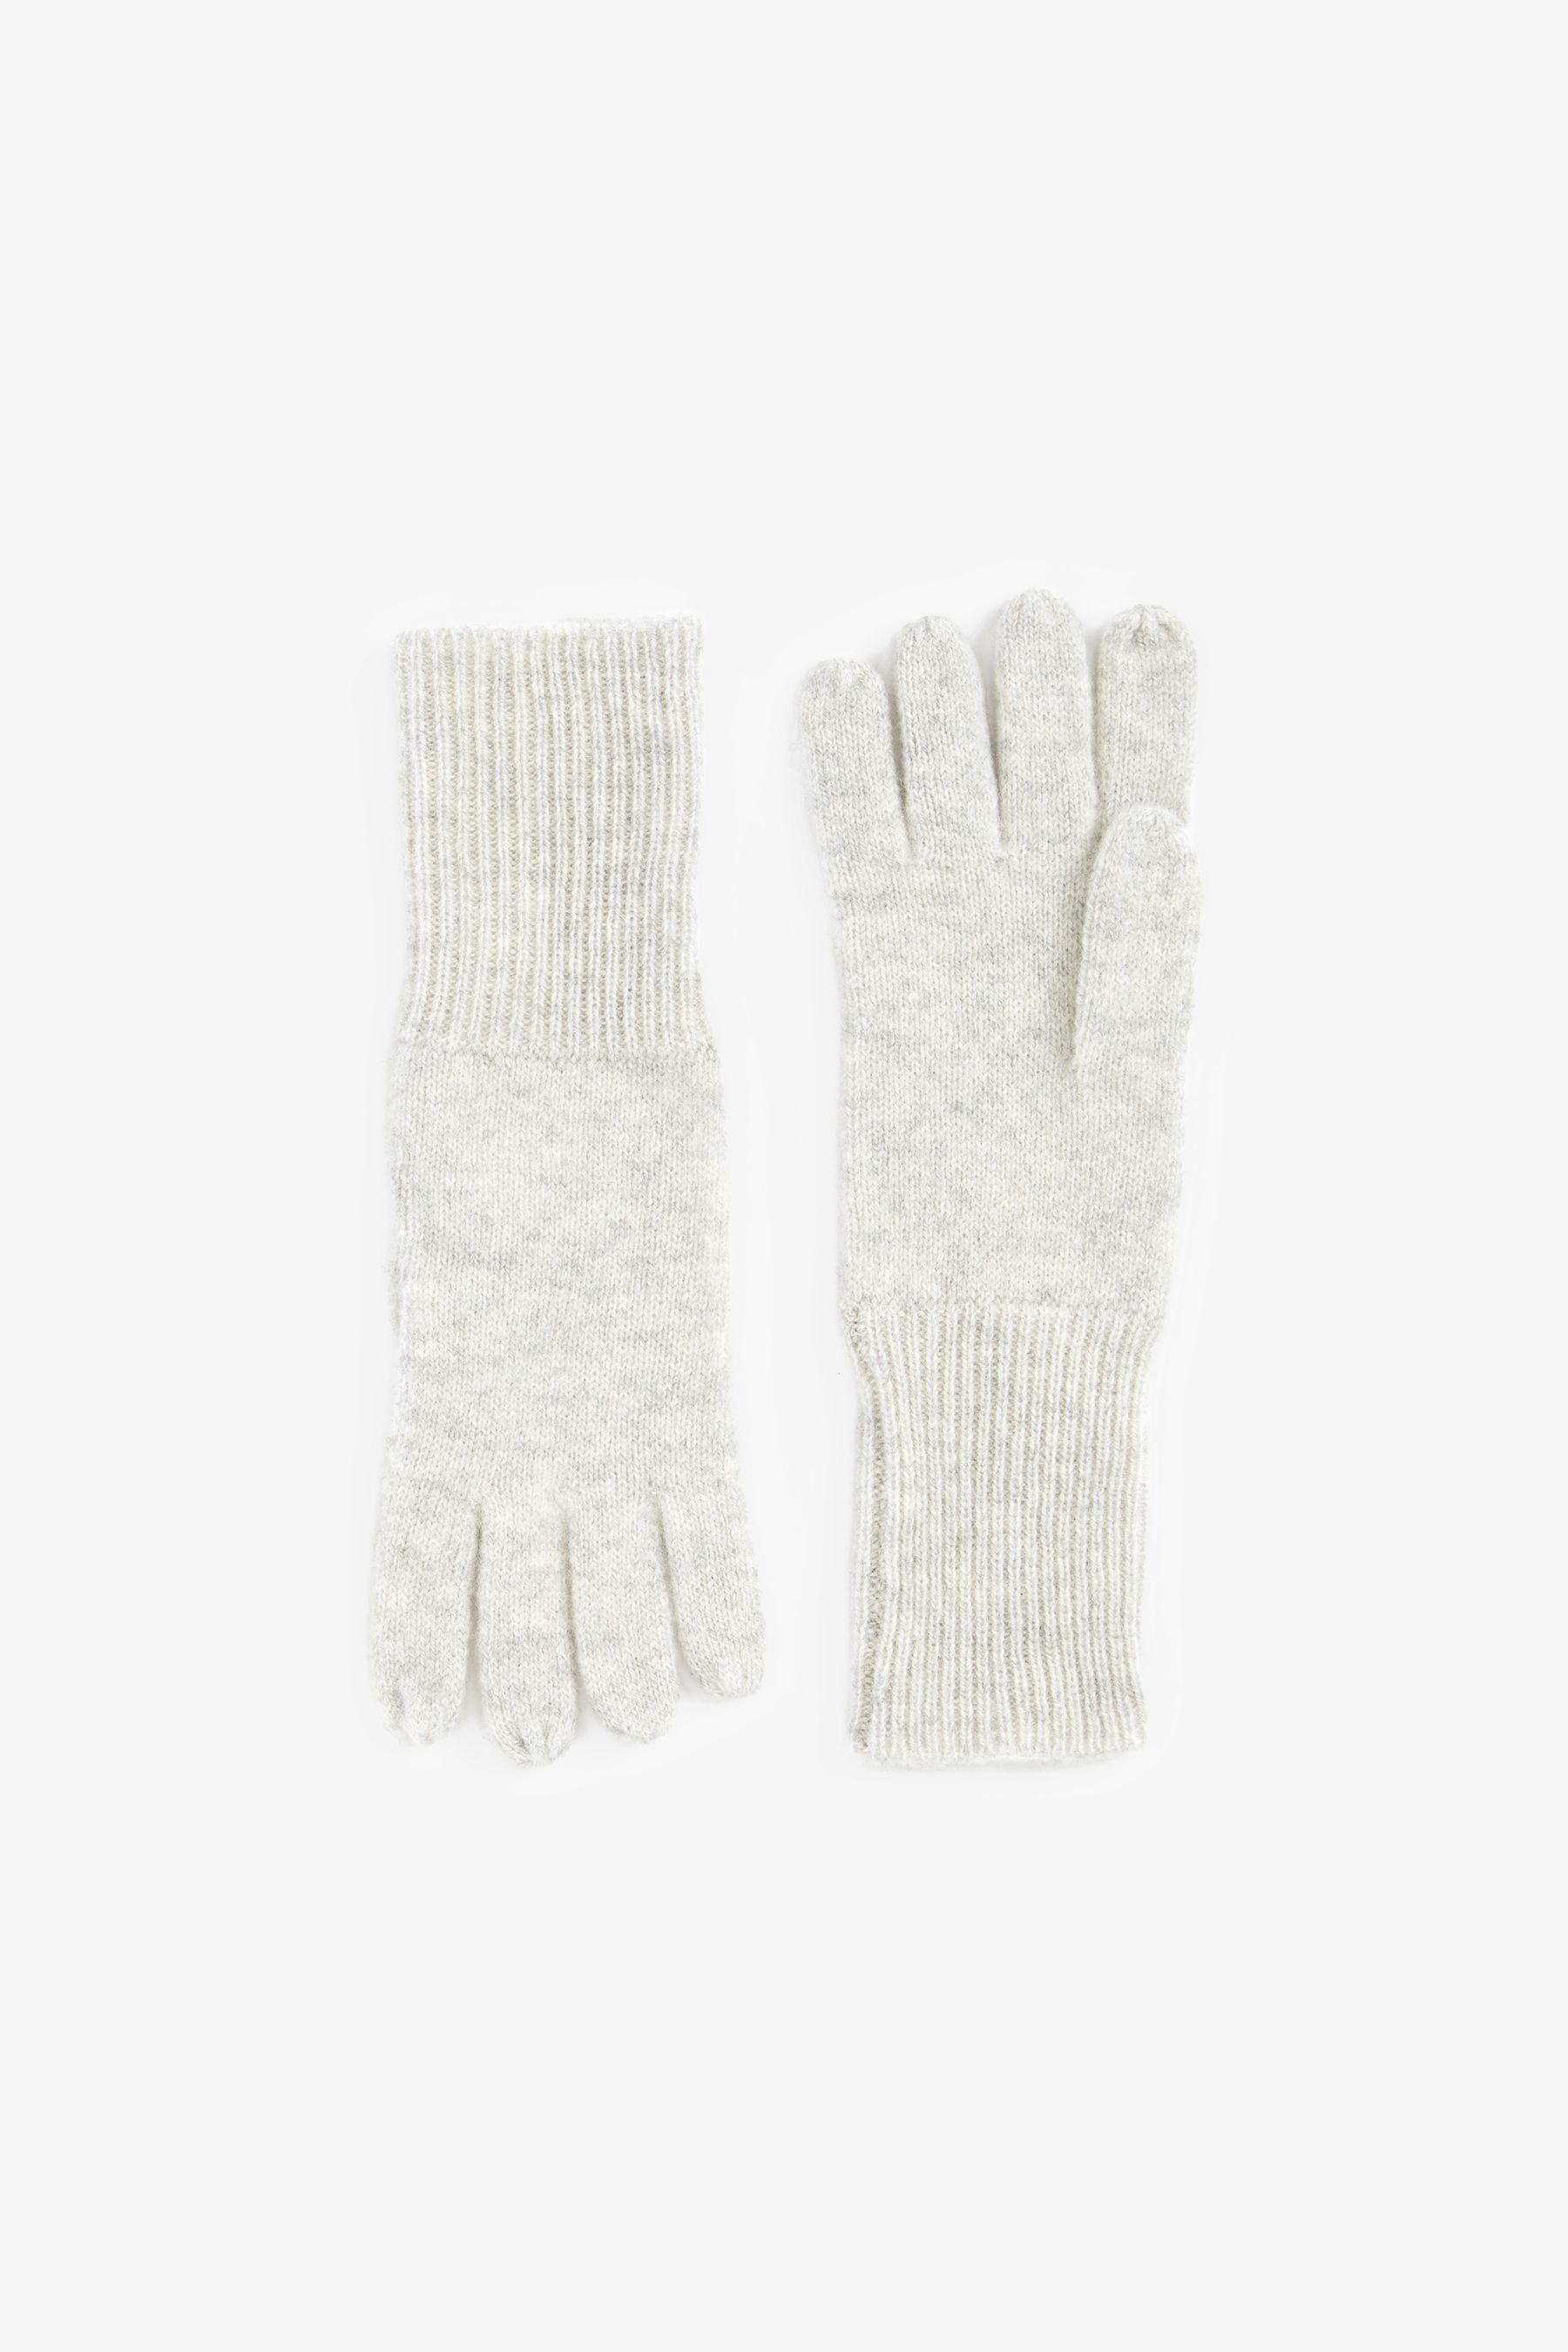 Next Strickhandschuhe Collection Luxe Handschuhe aus 100 % Kaschmir Grey | Strickhandschuhe